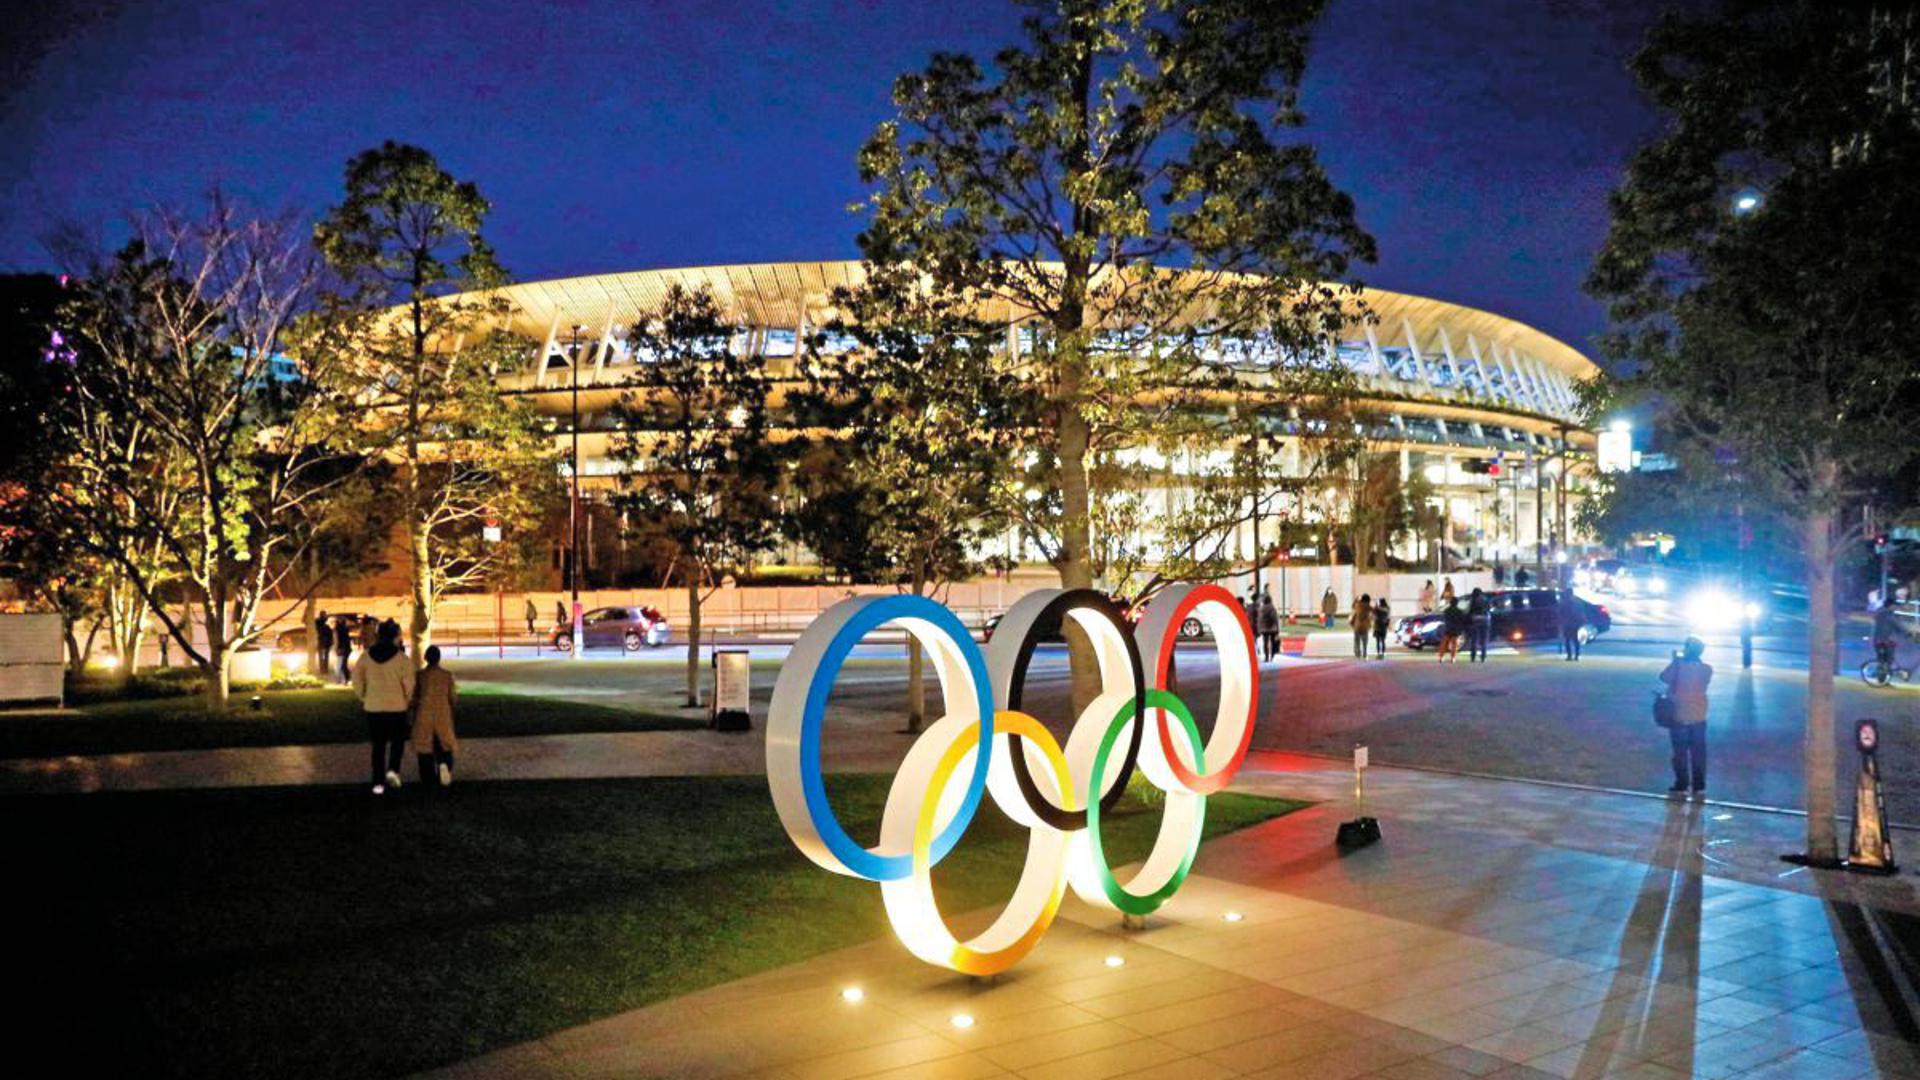 Lichtspiele für das Ringe-Festival am und rund um das Tokioter Olympiastadion. Darin werden im Sommer das Fußballturnier und die Leichtathletikwettkämpfe sowie die Eröffnungs- und Schlussfeier der Olympischen Spiele stattfinden. Auch viele Vertreter aus Badens Spitzensportszene hoffen dann, vor Ort dabei zu sein.